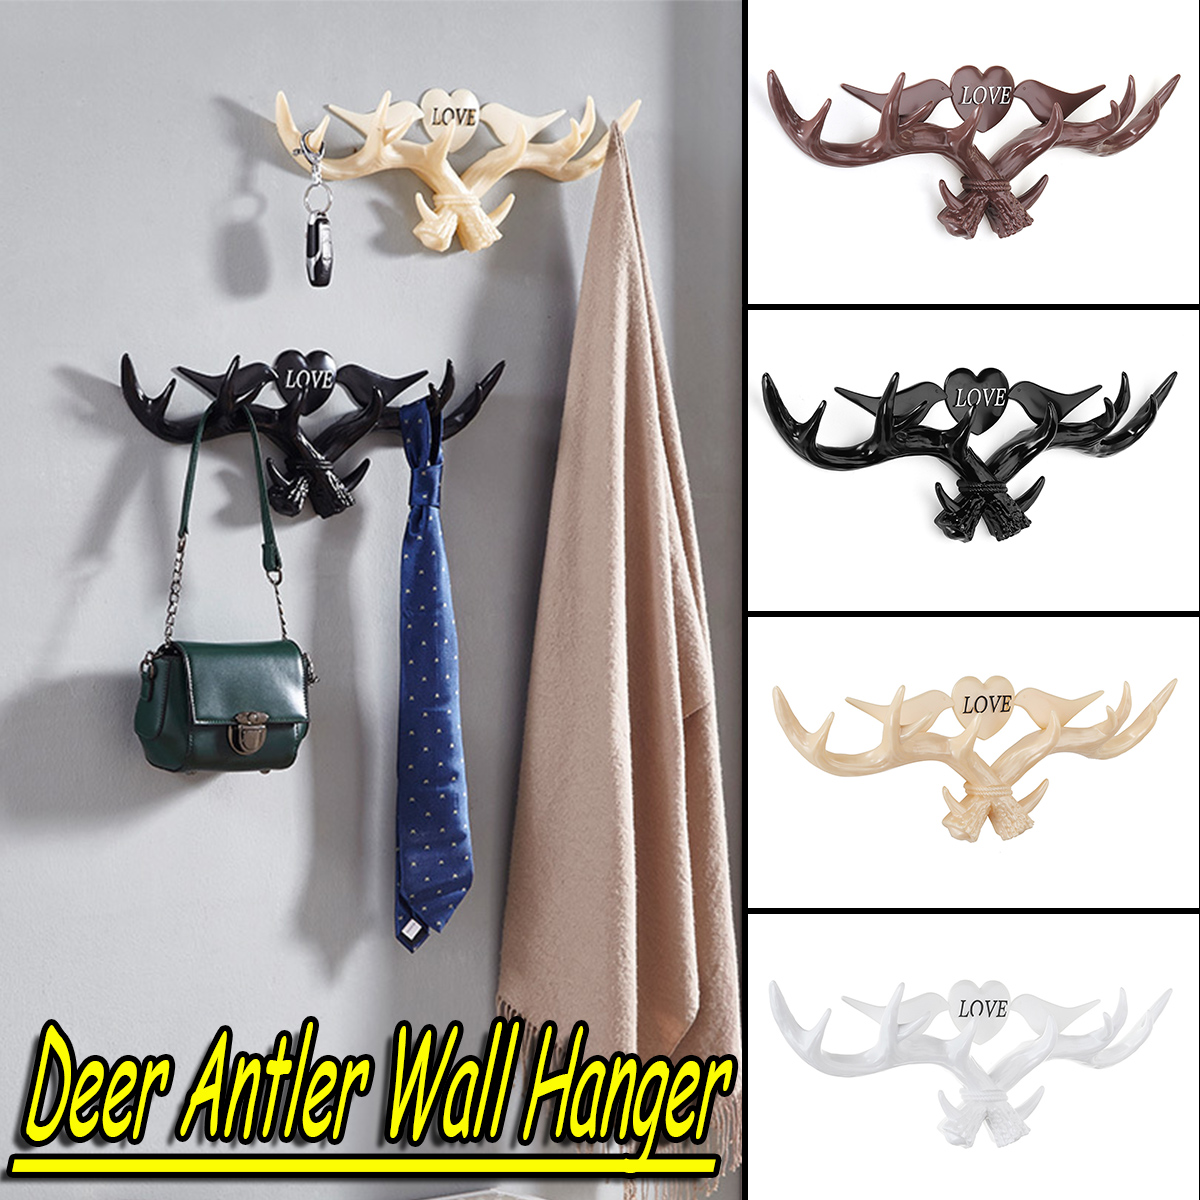 Love-Vintage-Deer-Antler-Wall-Hanger-Decoration-Coat-Hook-And-Hat-Rack-4-Color-Holder-1403840-1